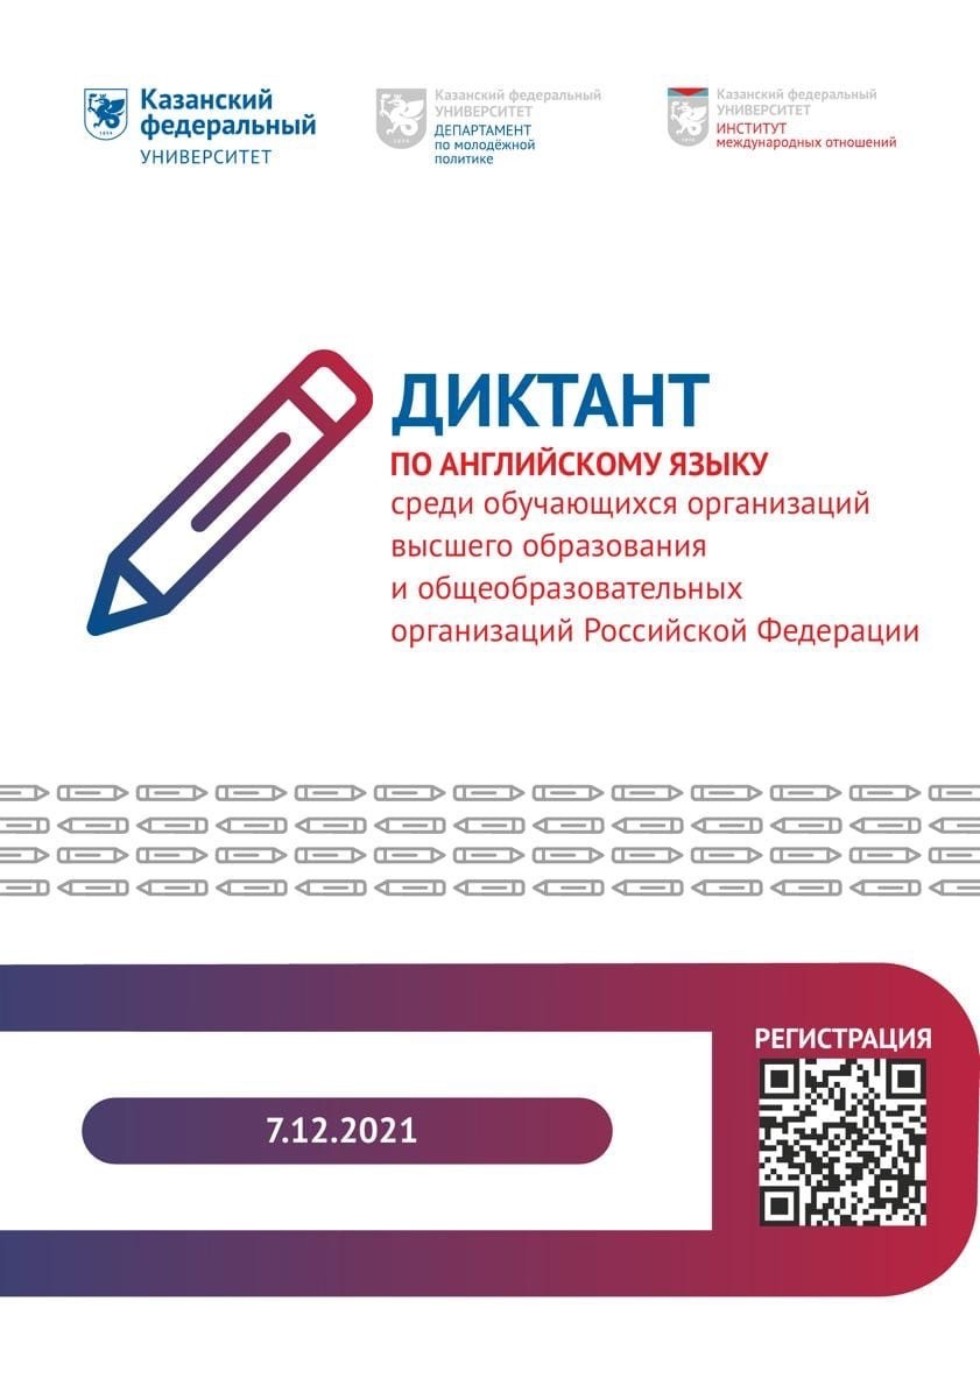 Кафедра филологии НЧИ КФУ приглашает к участию во Всероссийском диктанте по английскому языку ,Всероссийский, диктант, английский язык